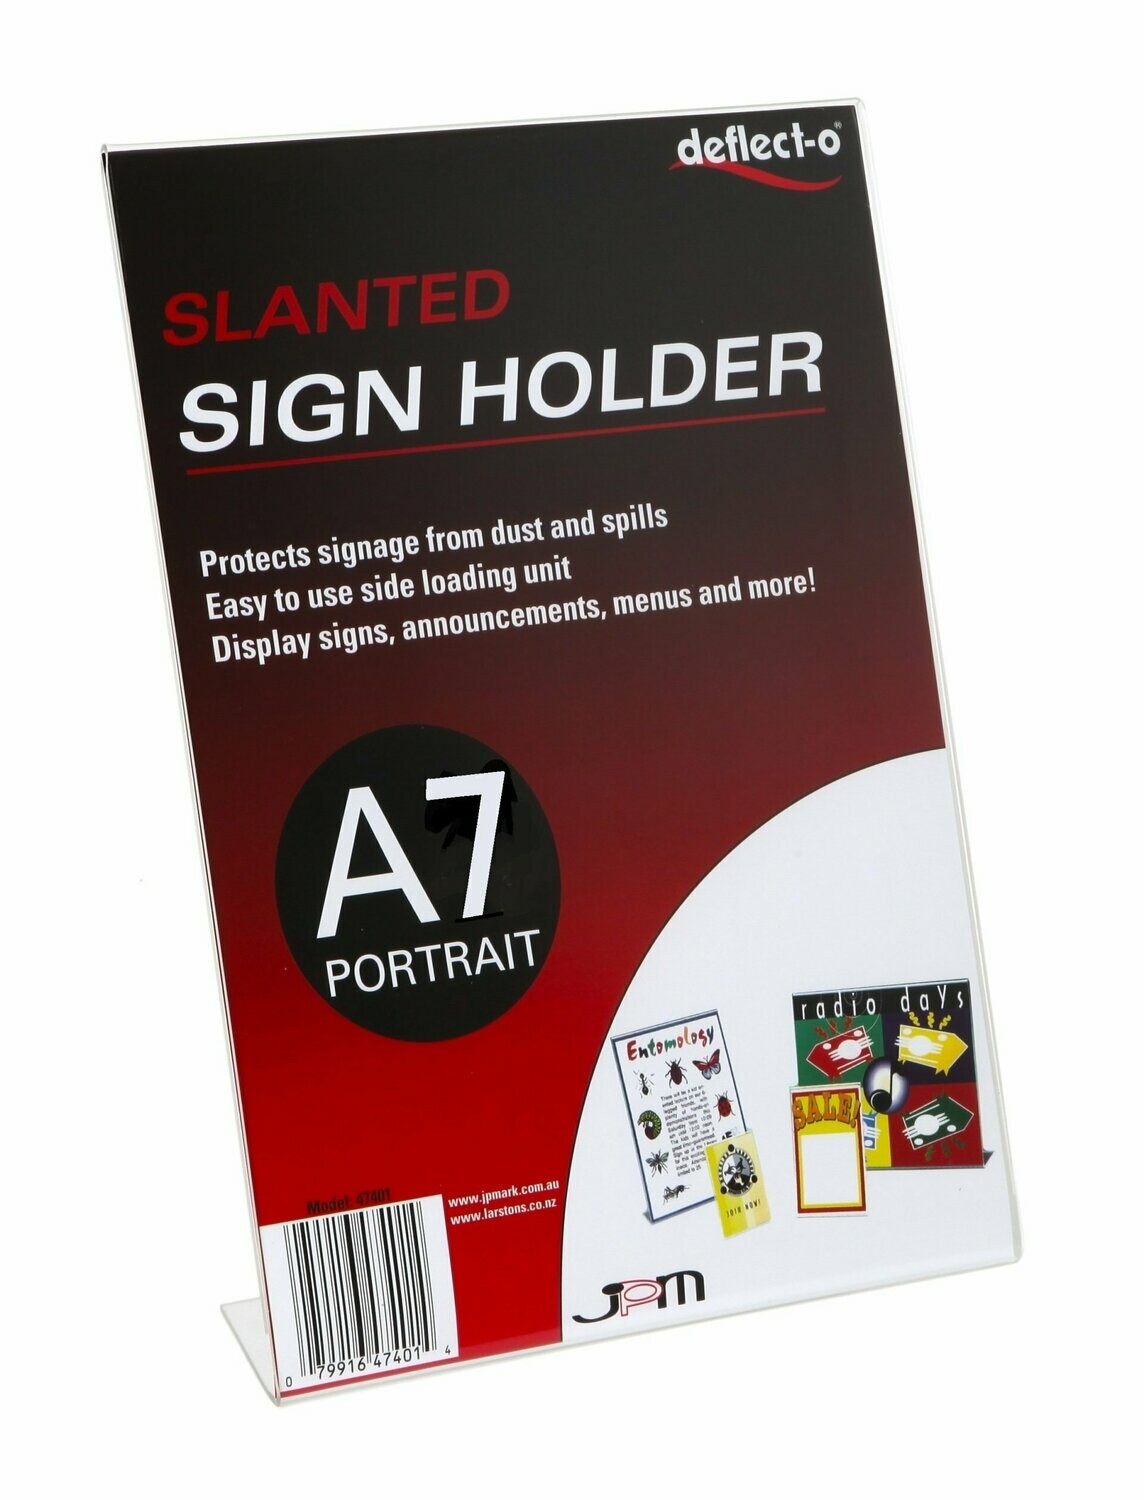 A7 Slanted Portrait Desktop Sign Holder